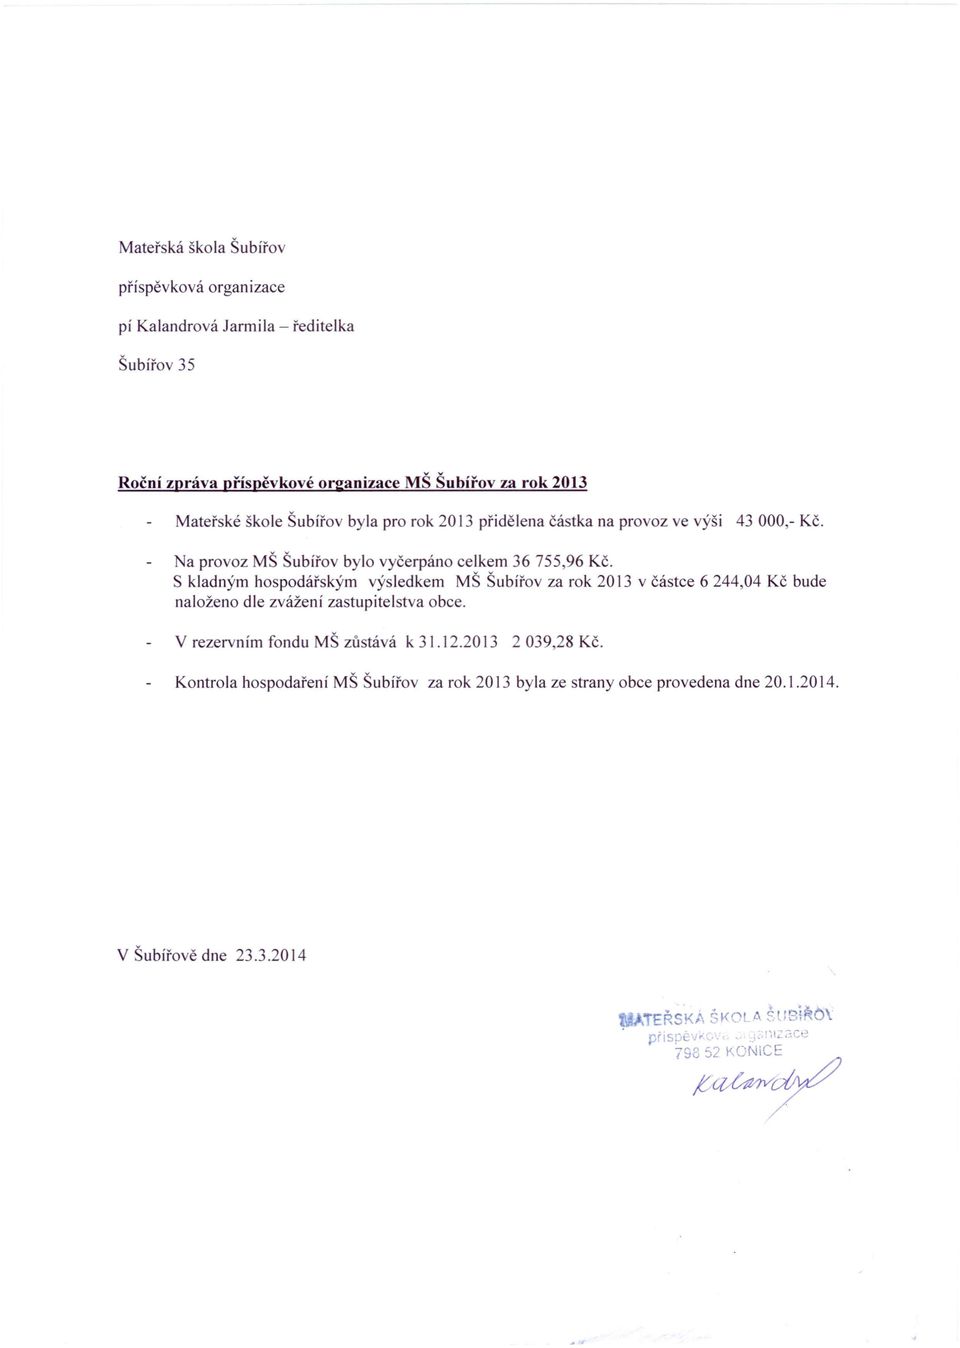 S kladným hospodářským výsledkem MŠ Šubířov za rok 2013 v částce 6 244,04 Kč bude naloženo dle zvážení zastupitelstva obce. V rezervním fondu MŠ zůstává k 31.12.